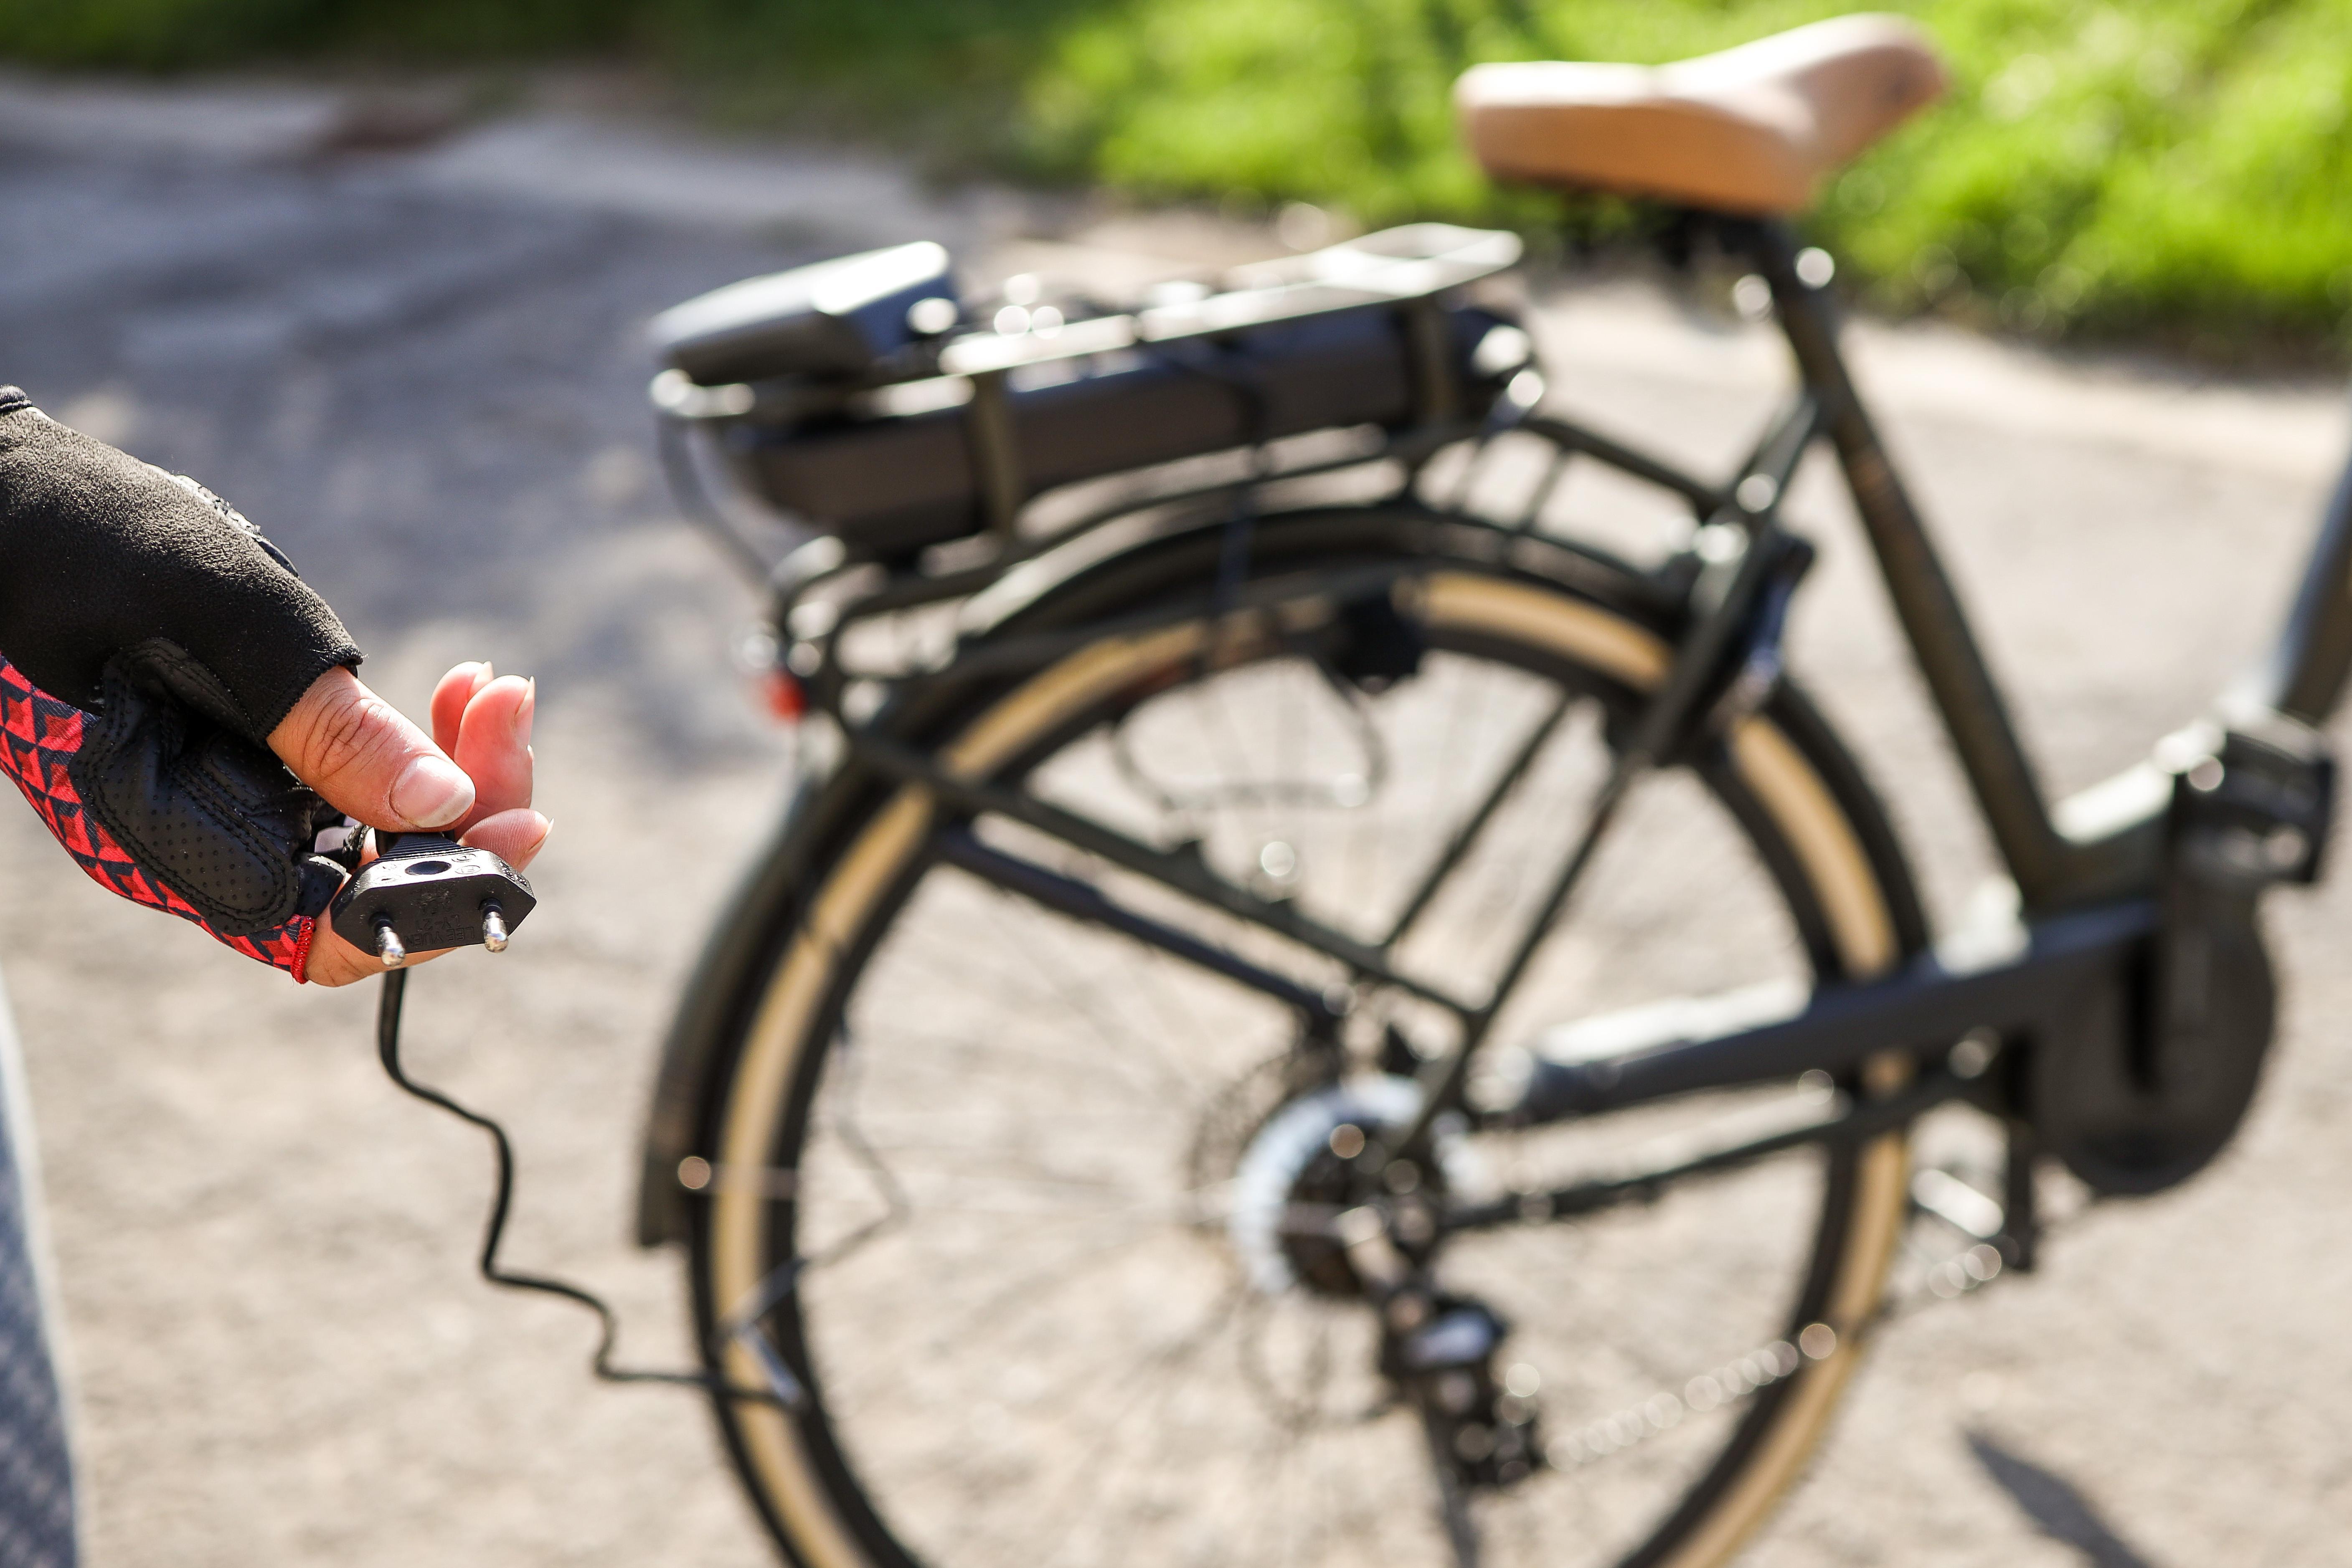 draadloze Muf Beugel Openbare oplaadpunten elektrische fiets niet bereikbaar | Fietsen123